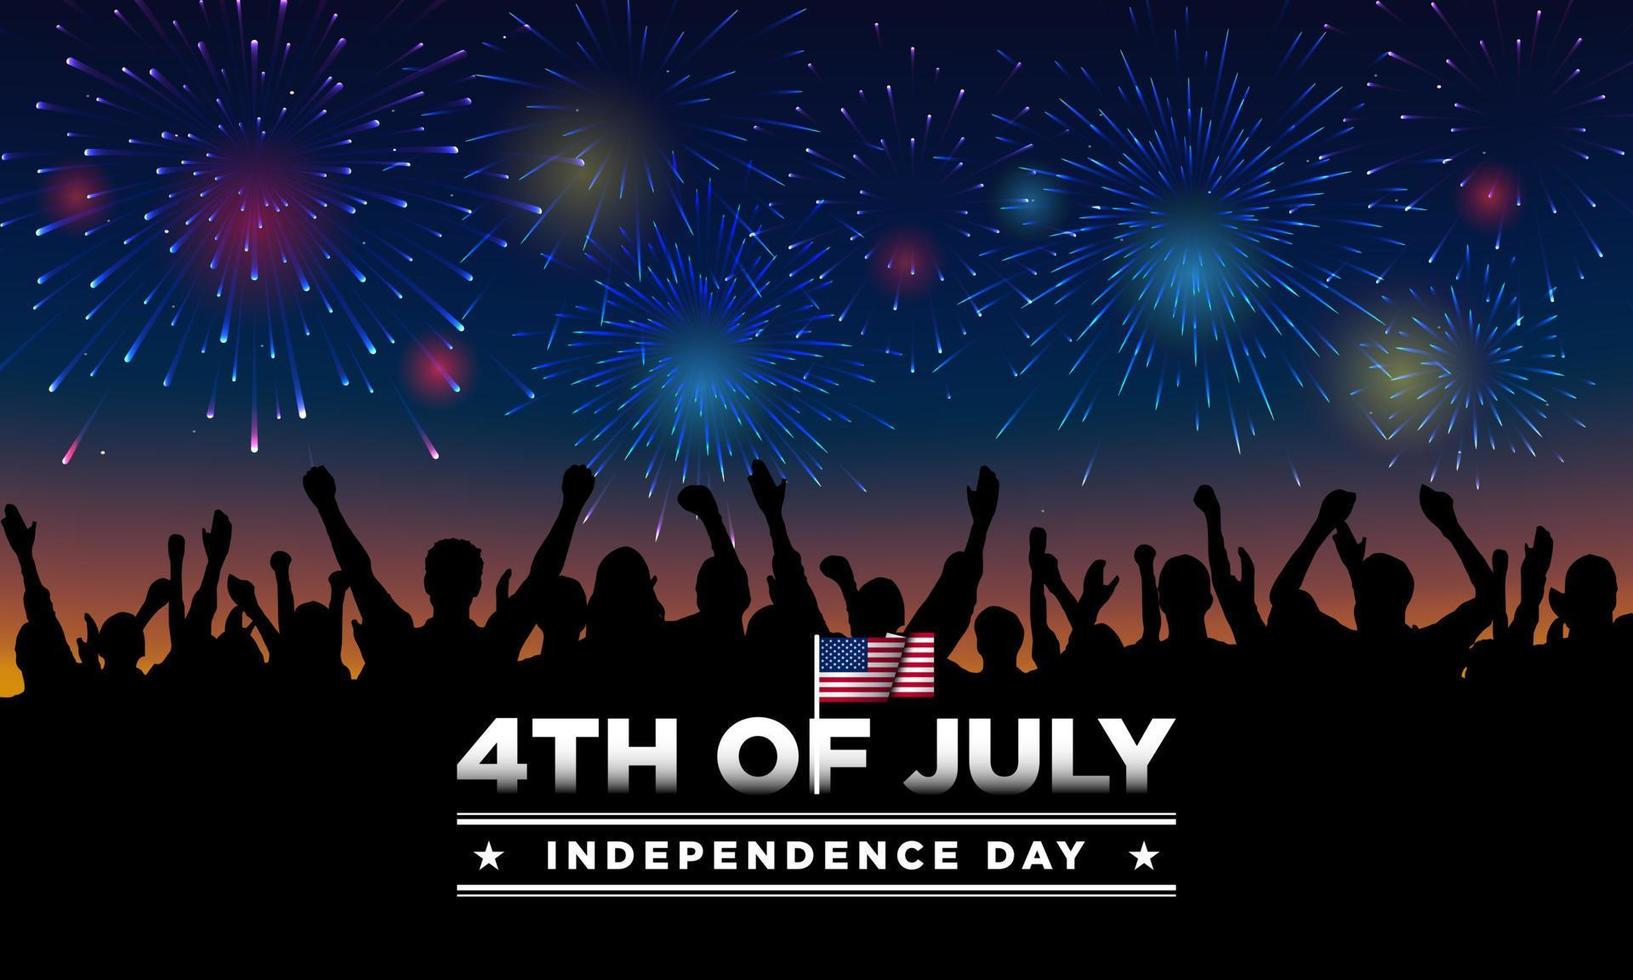 Verenigde Staten Onafhankelijkheidsdag achtergrondontwerp. vier juli. vector